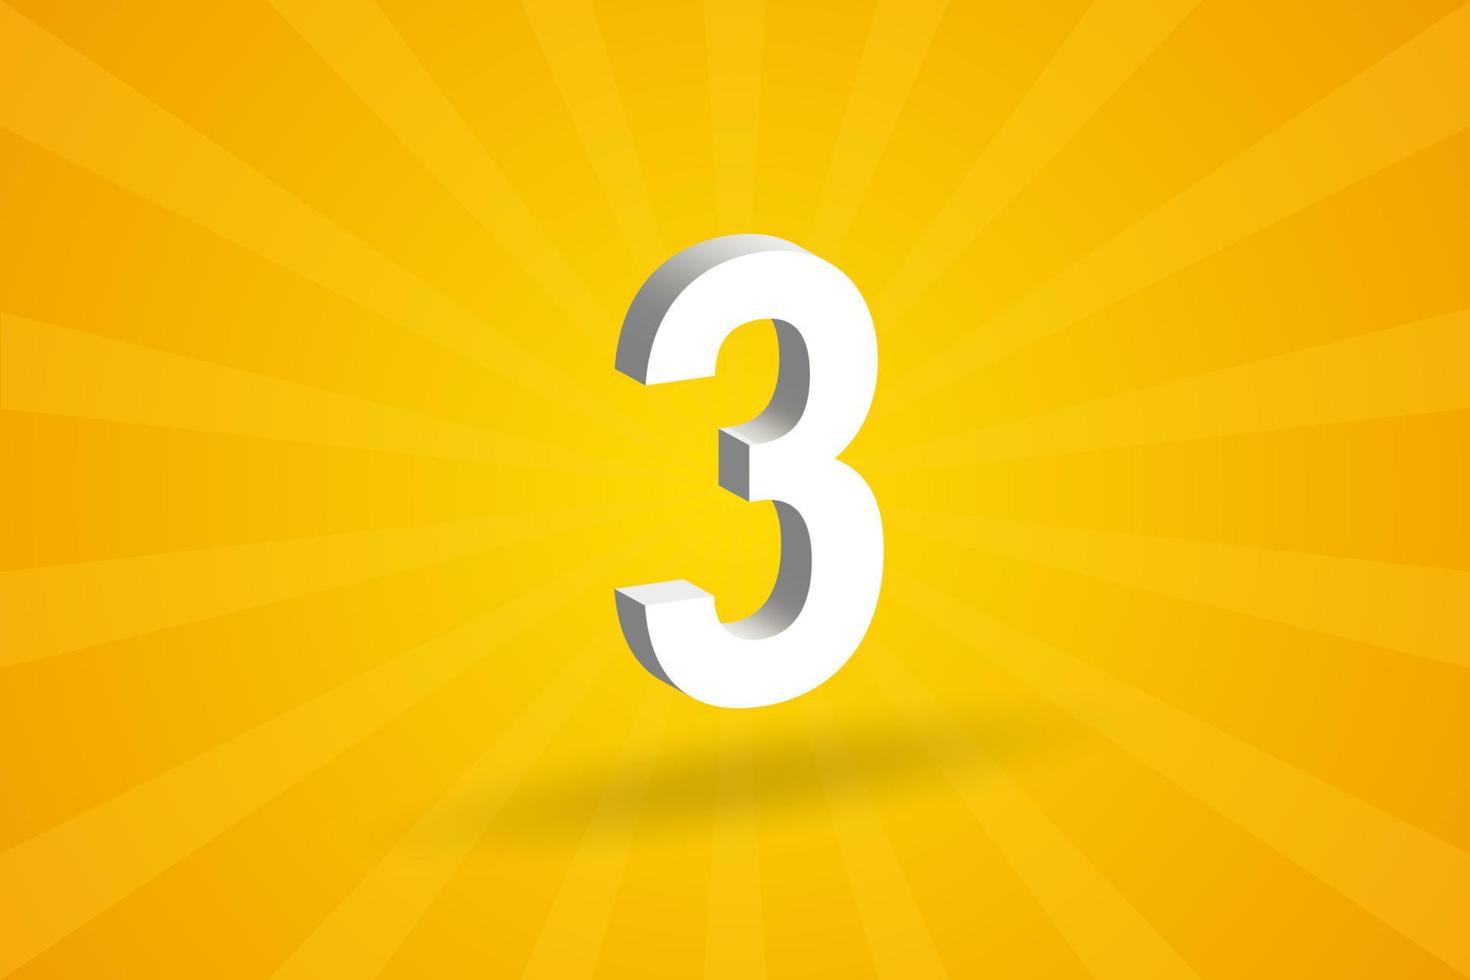 3d 3 numero font alfabeto. bianca 3d numero 3 con giallo sfondo vettore